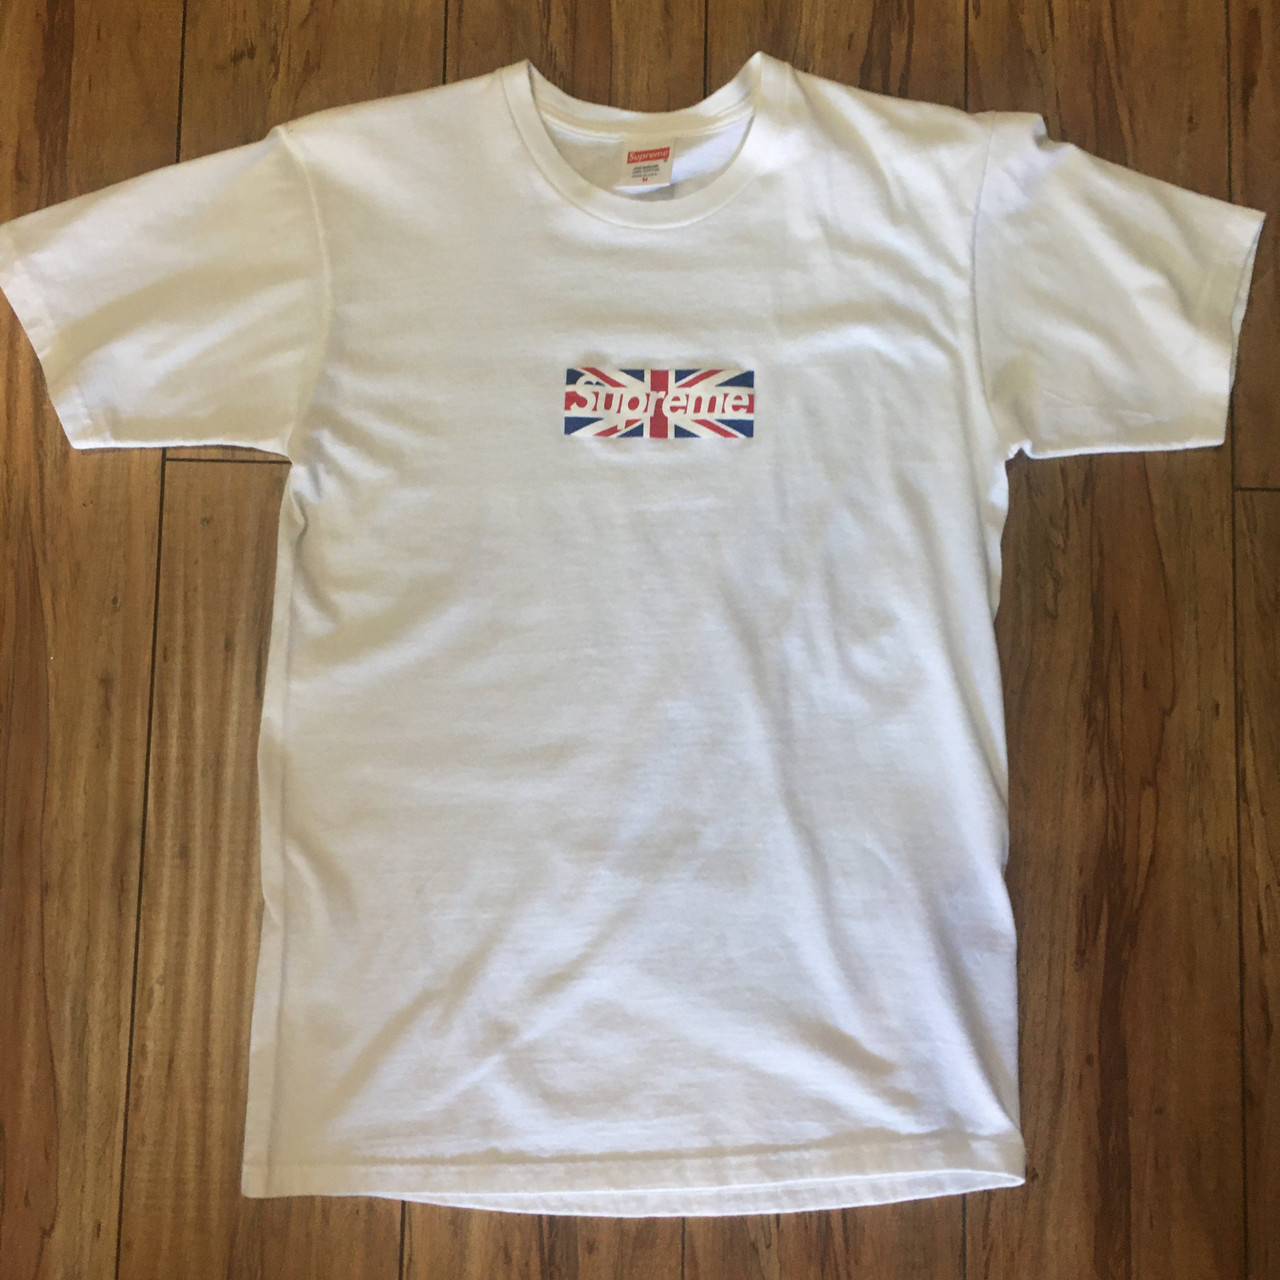 若者の大愛商品 london Tシャツ supreme box (mw-392) M 白 tee logo M